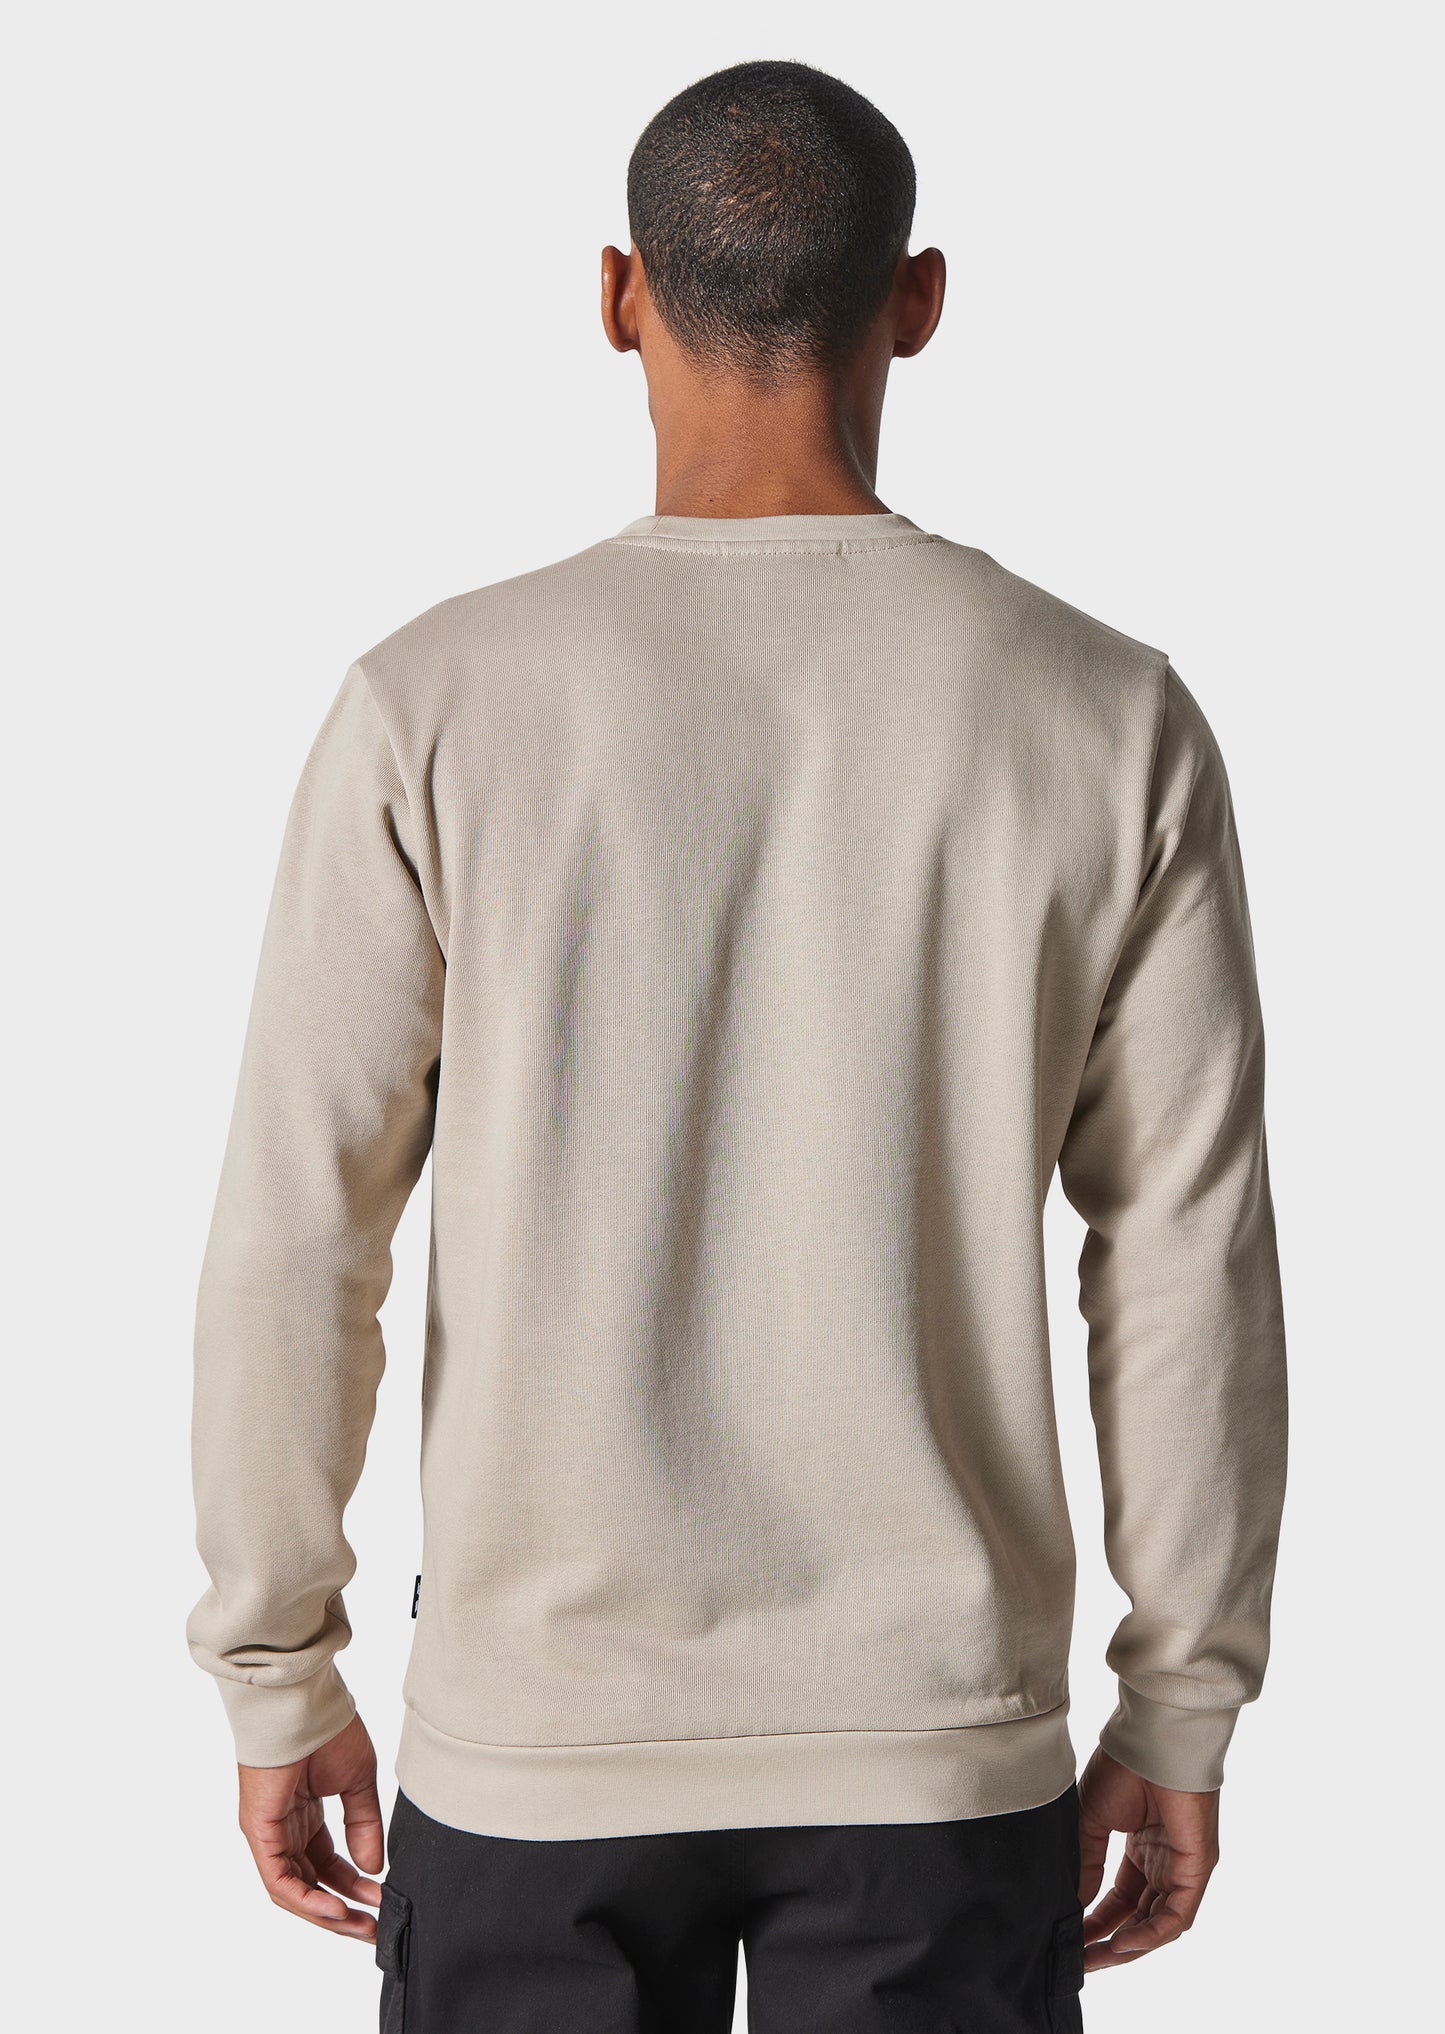 Sharpow Neutral Sweatshirt